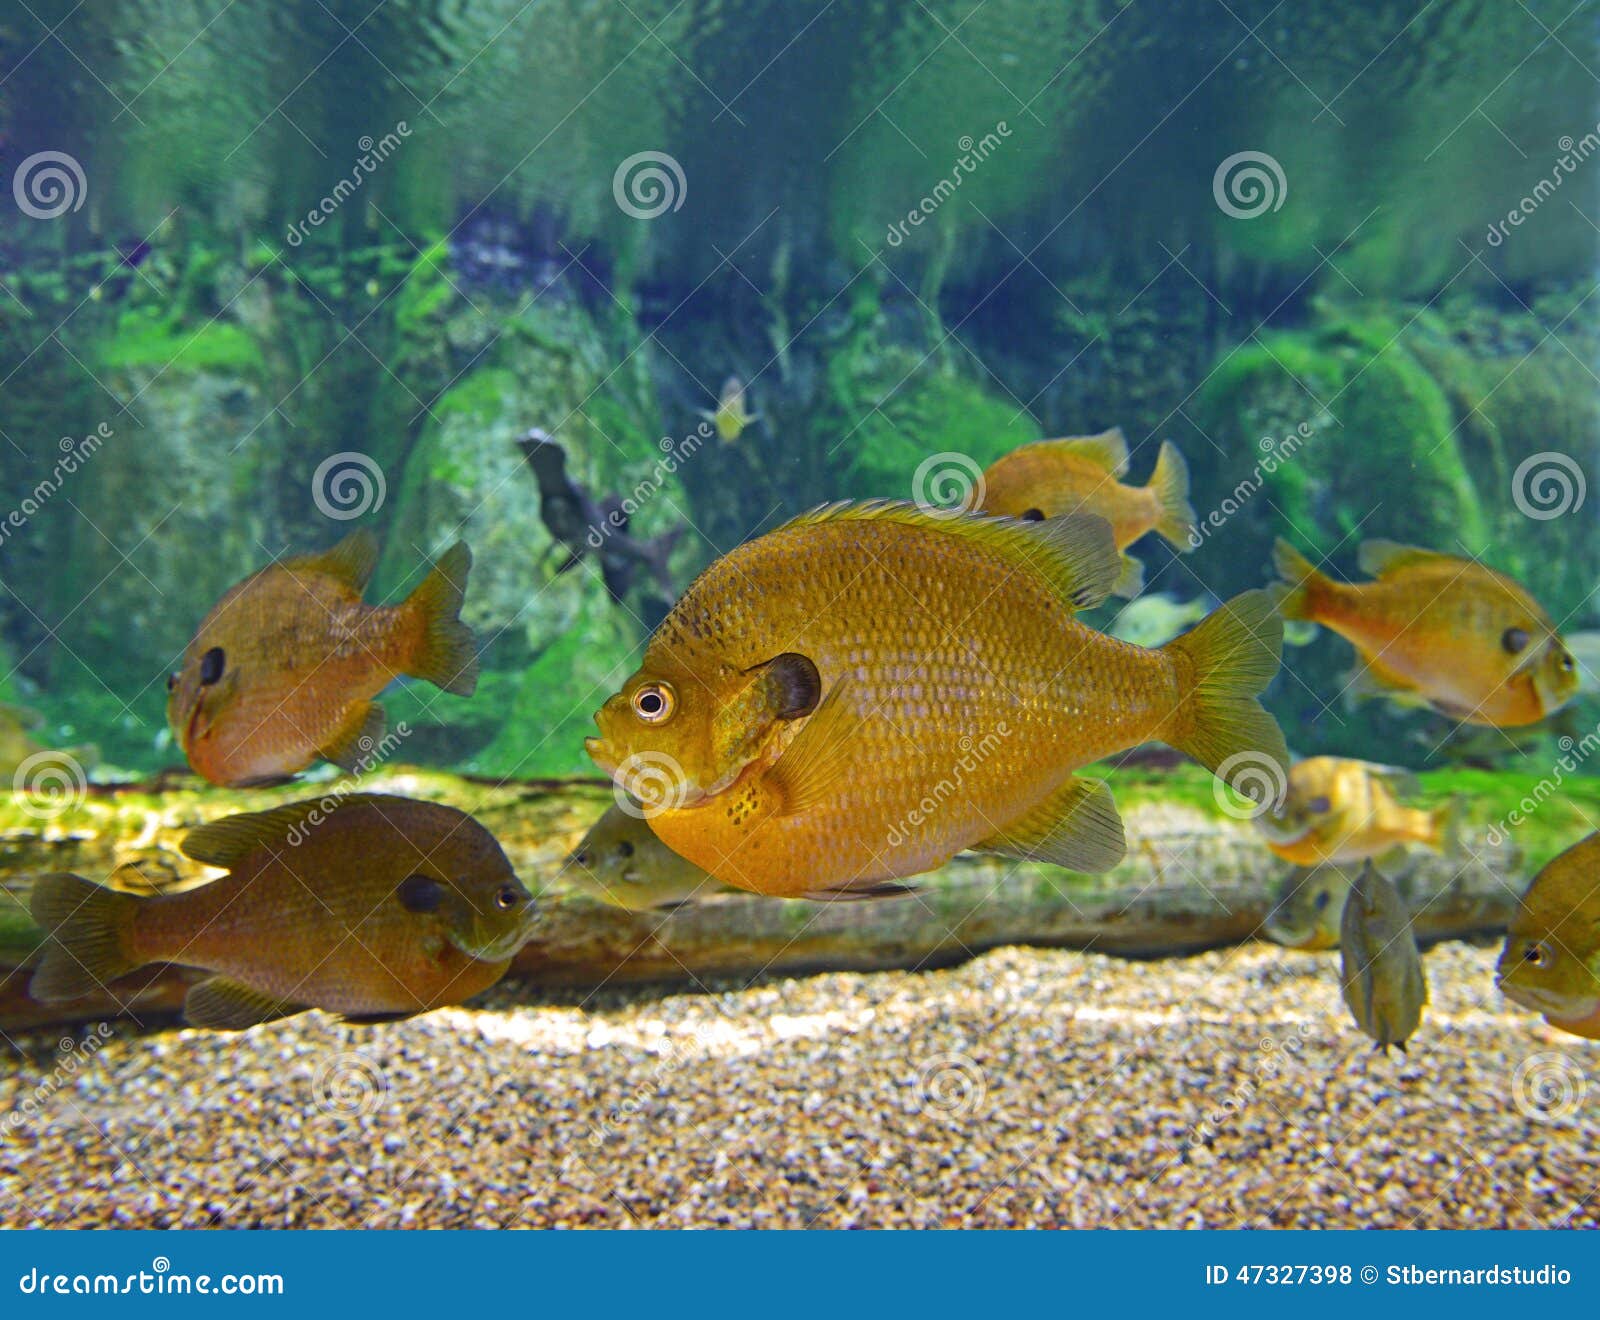 bluegill aquarium